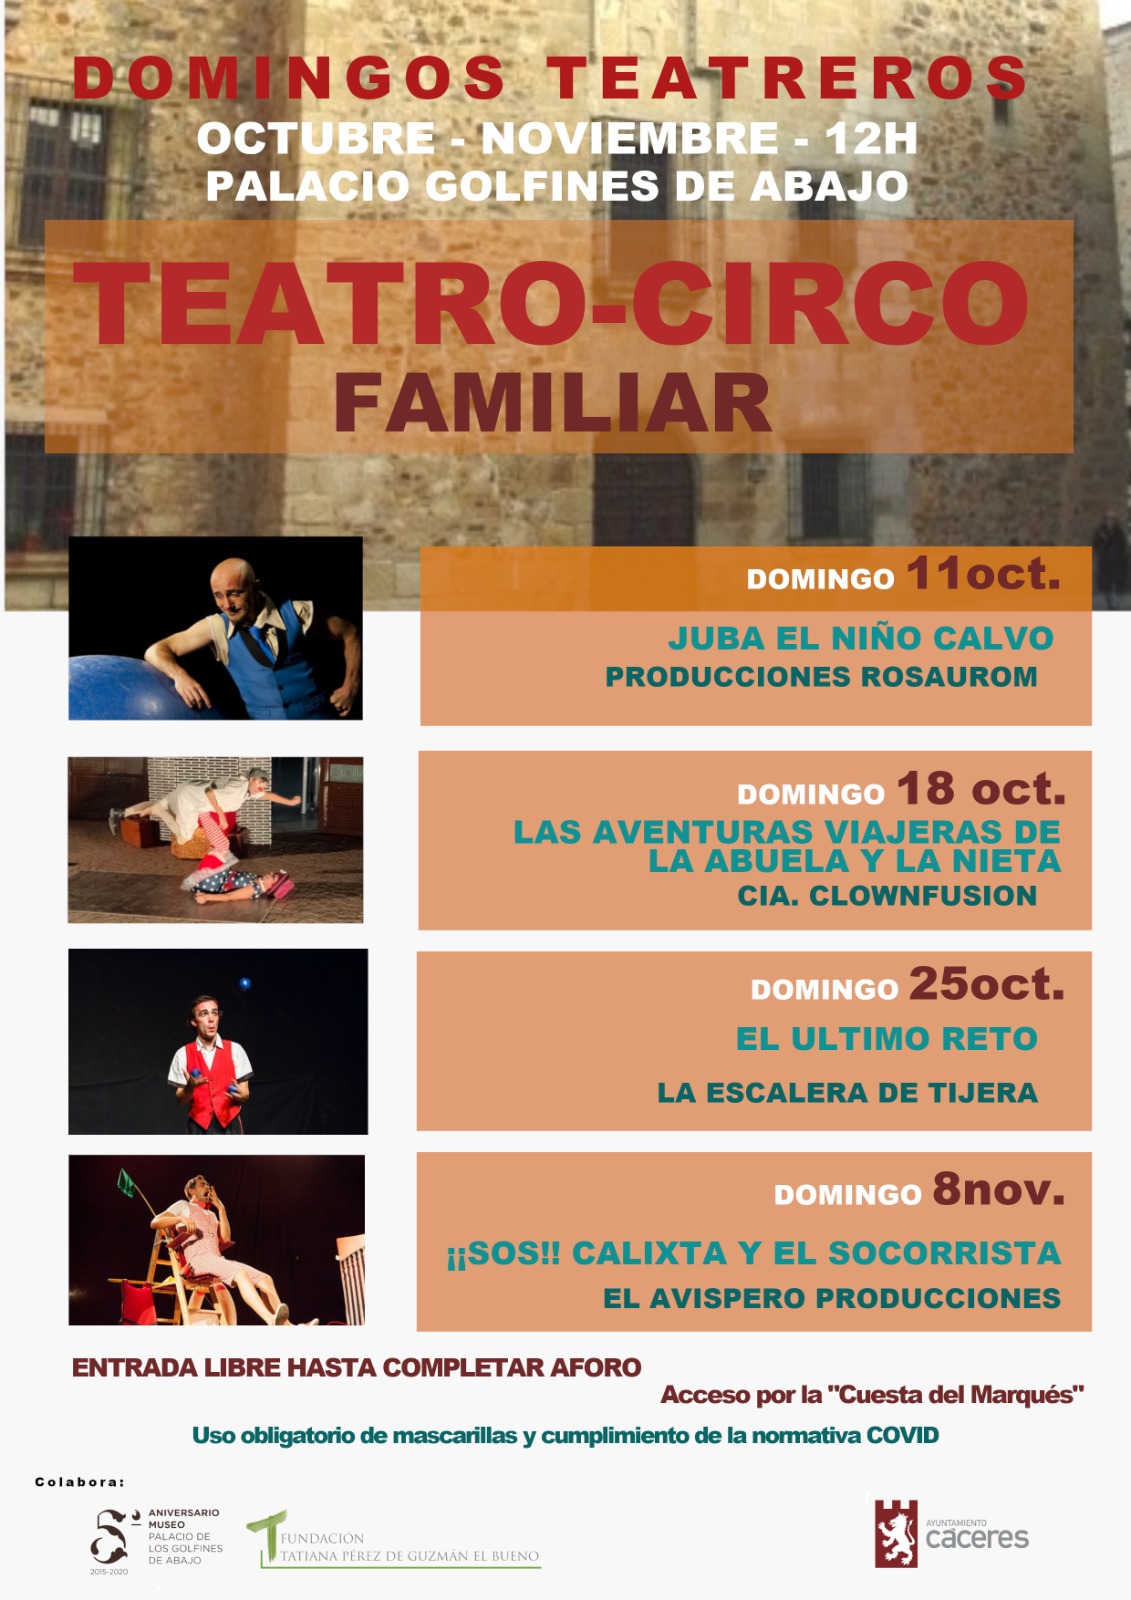 Cartel del programa "Domingos Teatreros"